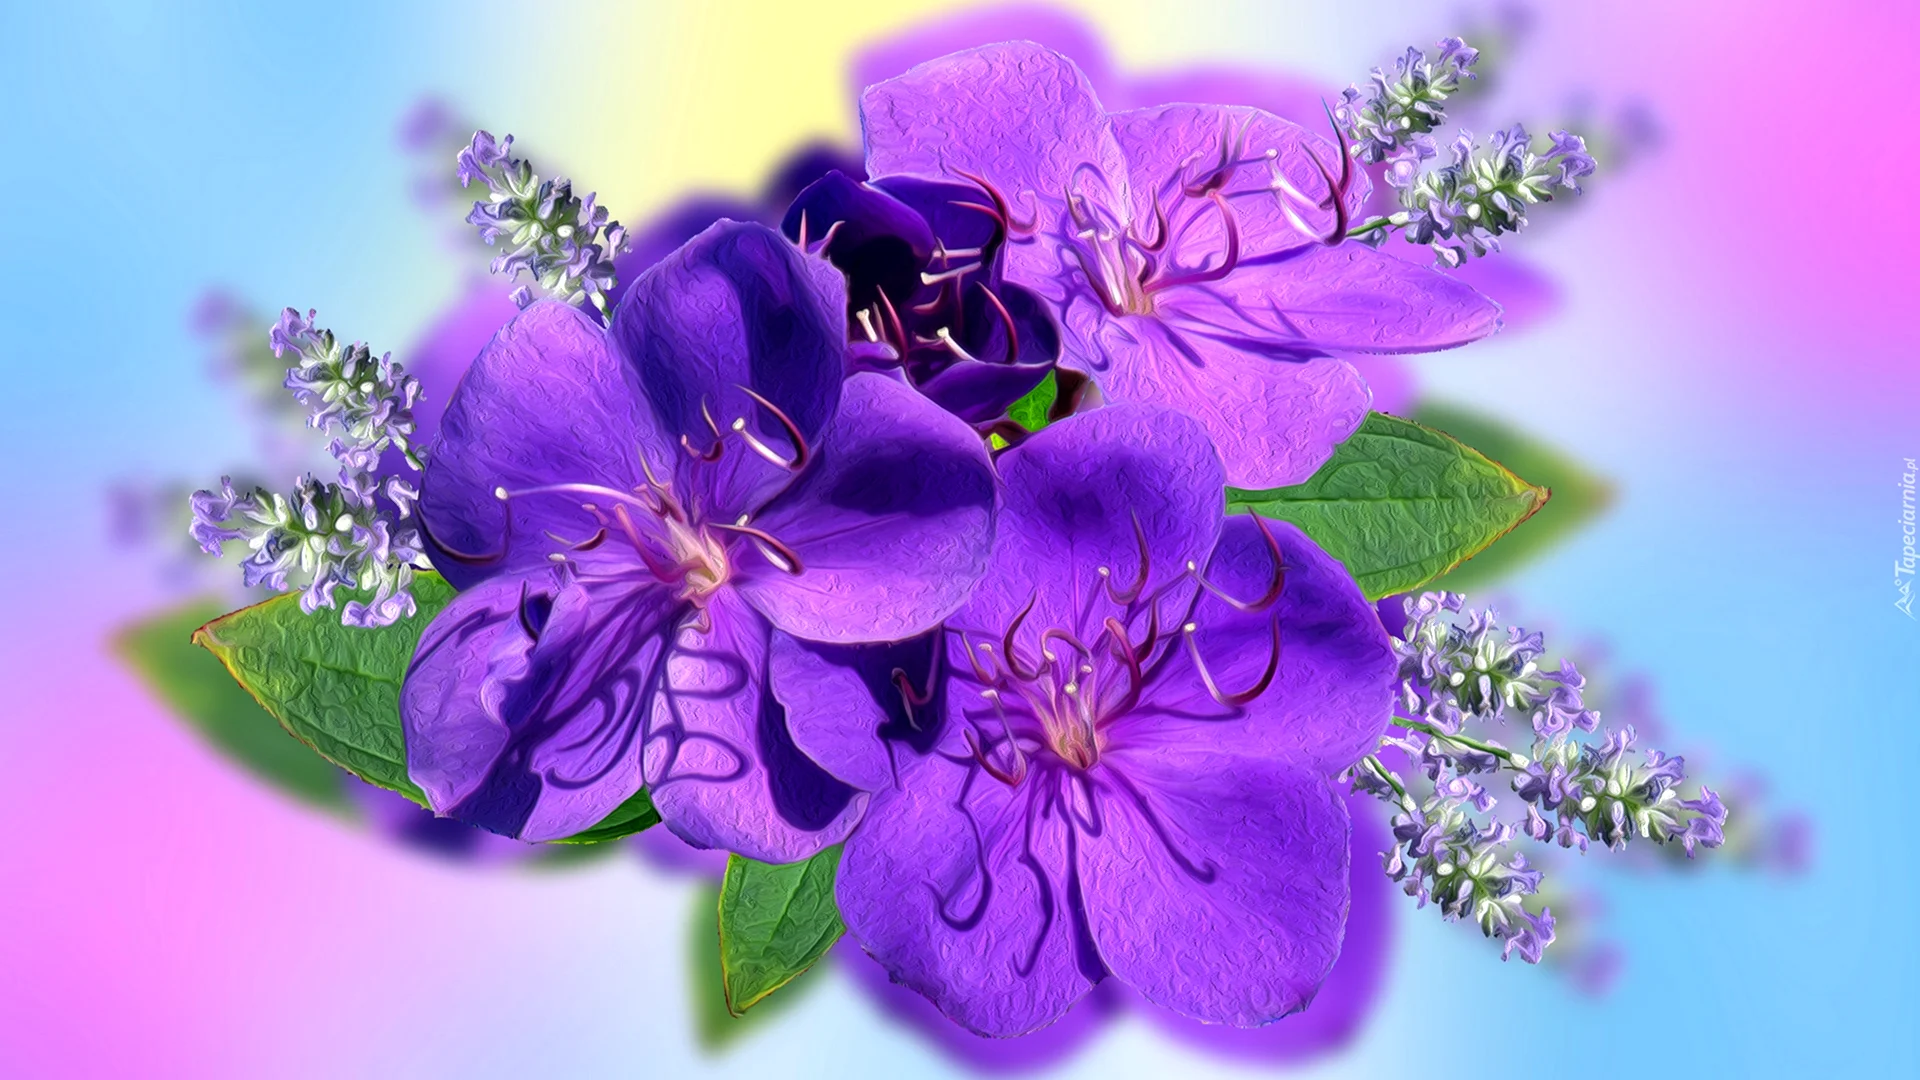 Фиолетовые цветы на прозрачном фоне